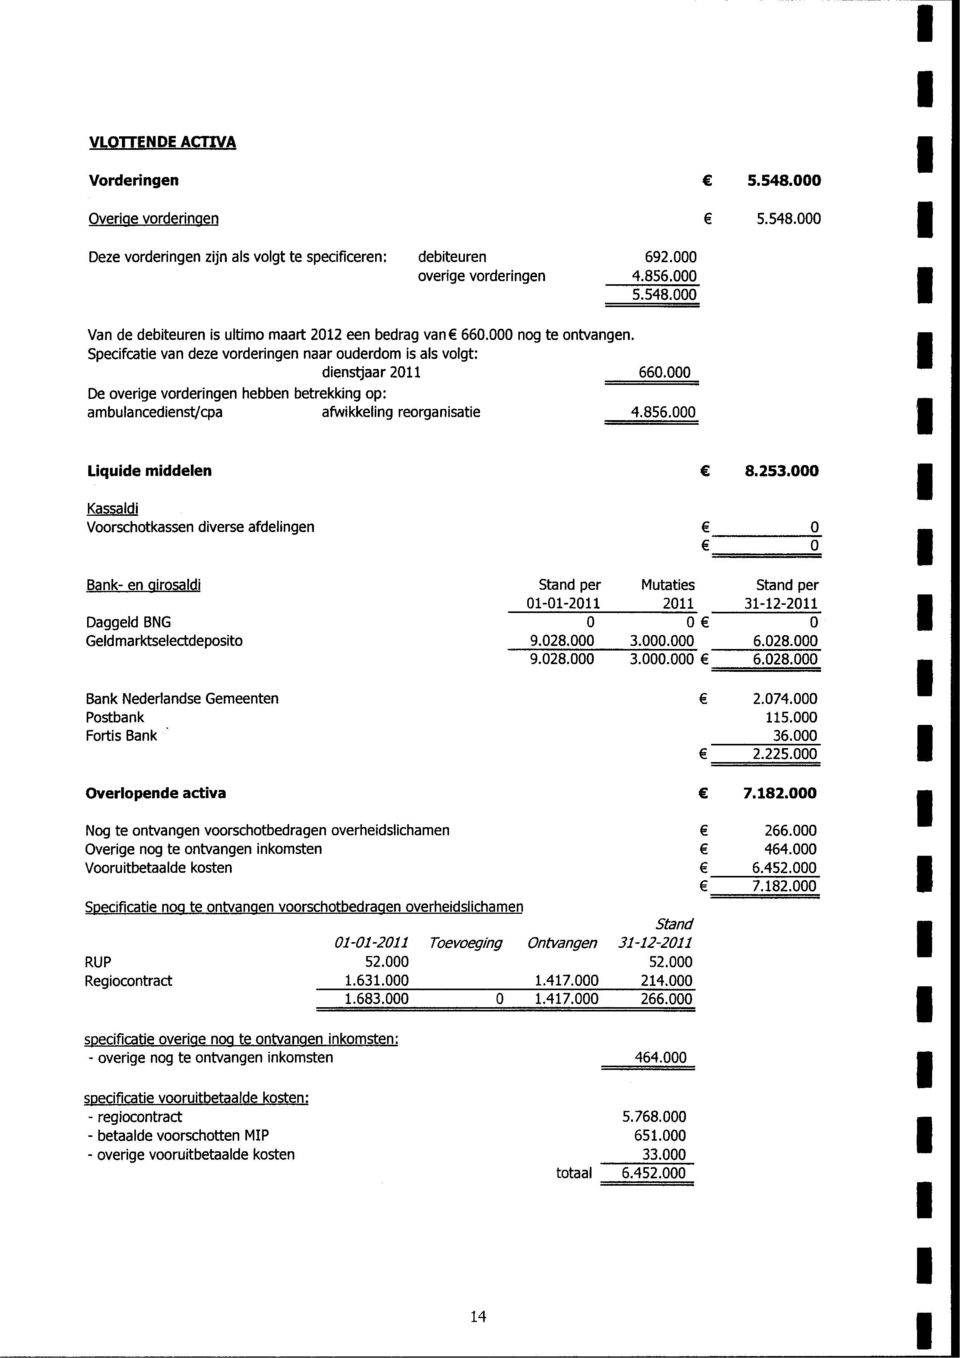 000 Liquide middelen 8.253.000 Kassaldi Voorshotkassen diverse afdelingen " Bank- en girosaldi Daggeld BNG Geldmarktseletdeposito Stand per 01-01-2011 9.028.000 9.028.000 Mutaties 2011 0 3.000.000 3.